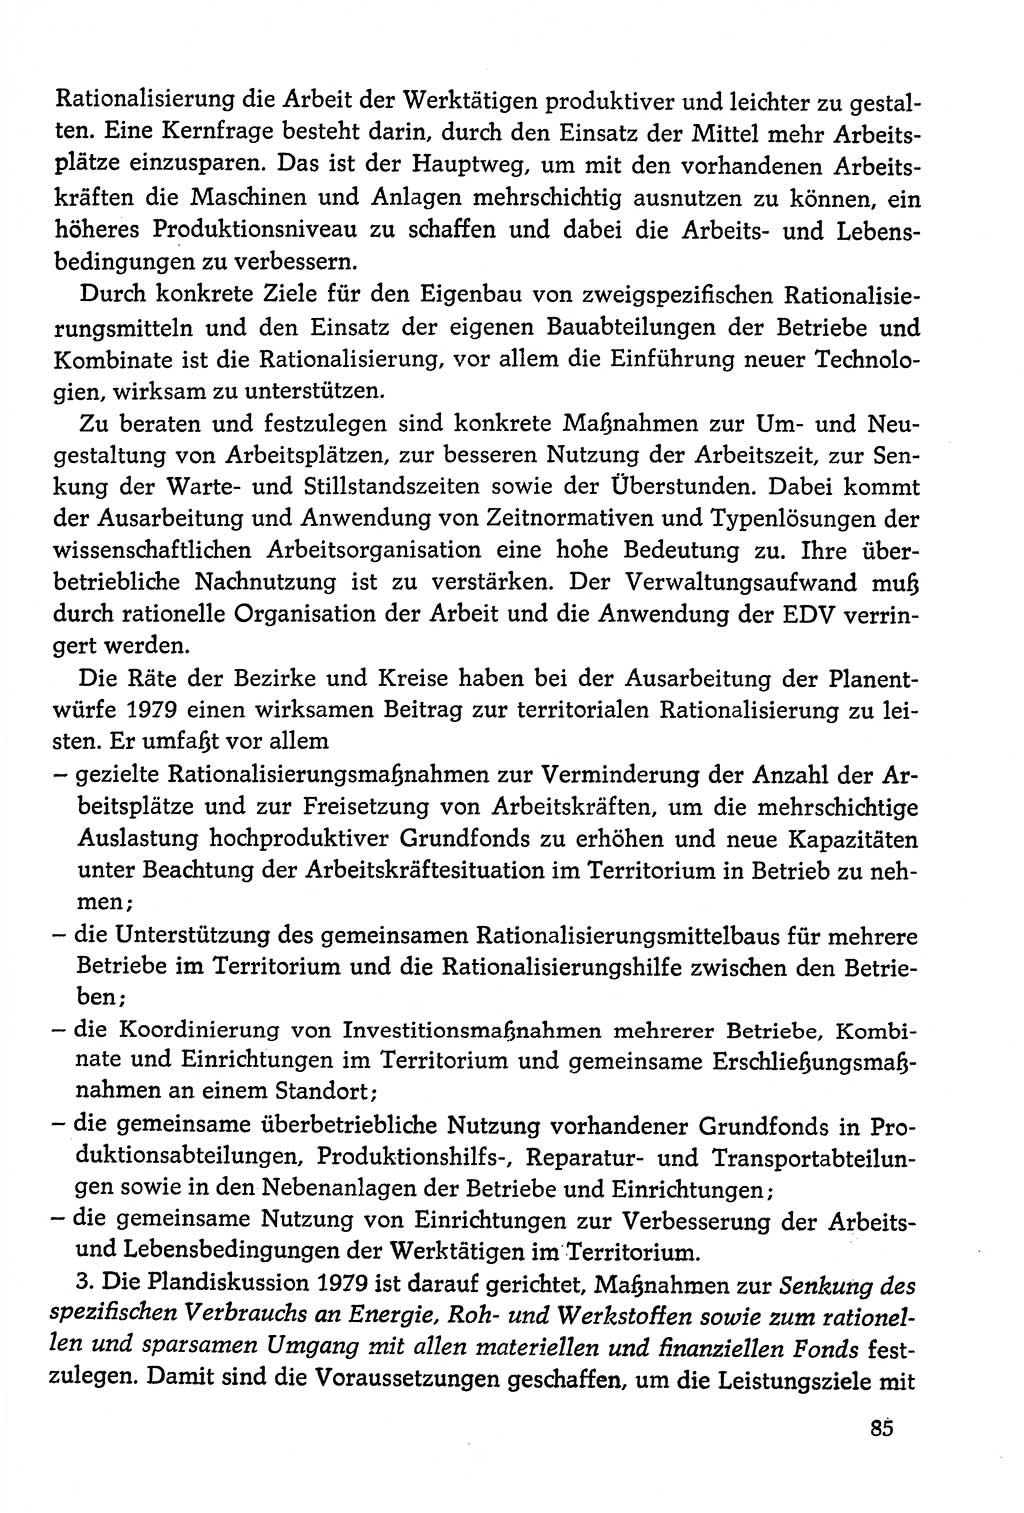 Dokumente der Sozialistischen Einheitspartei Deutschlands (SED) [Deutsche Demokratische Republik (DDR)] 1978-1979, Seite 85 (Dok. SED DDR 1978-1979, S. 85)